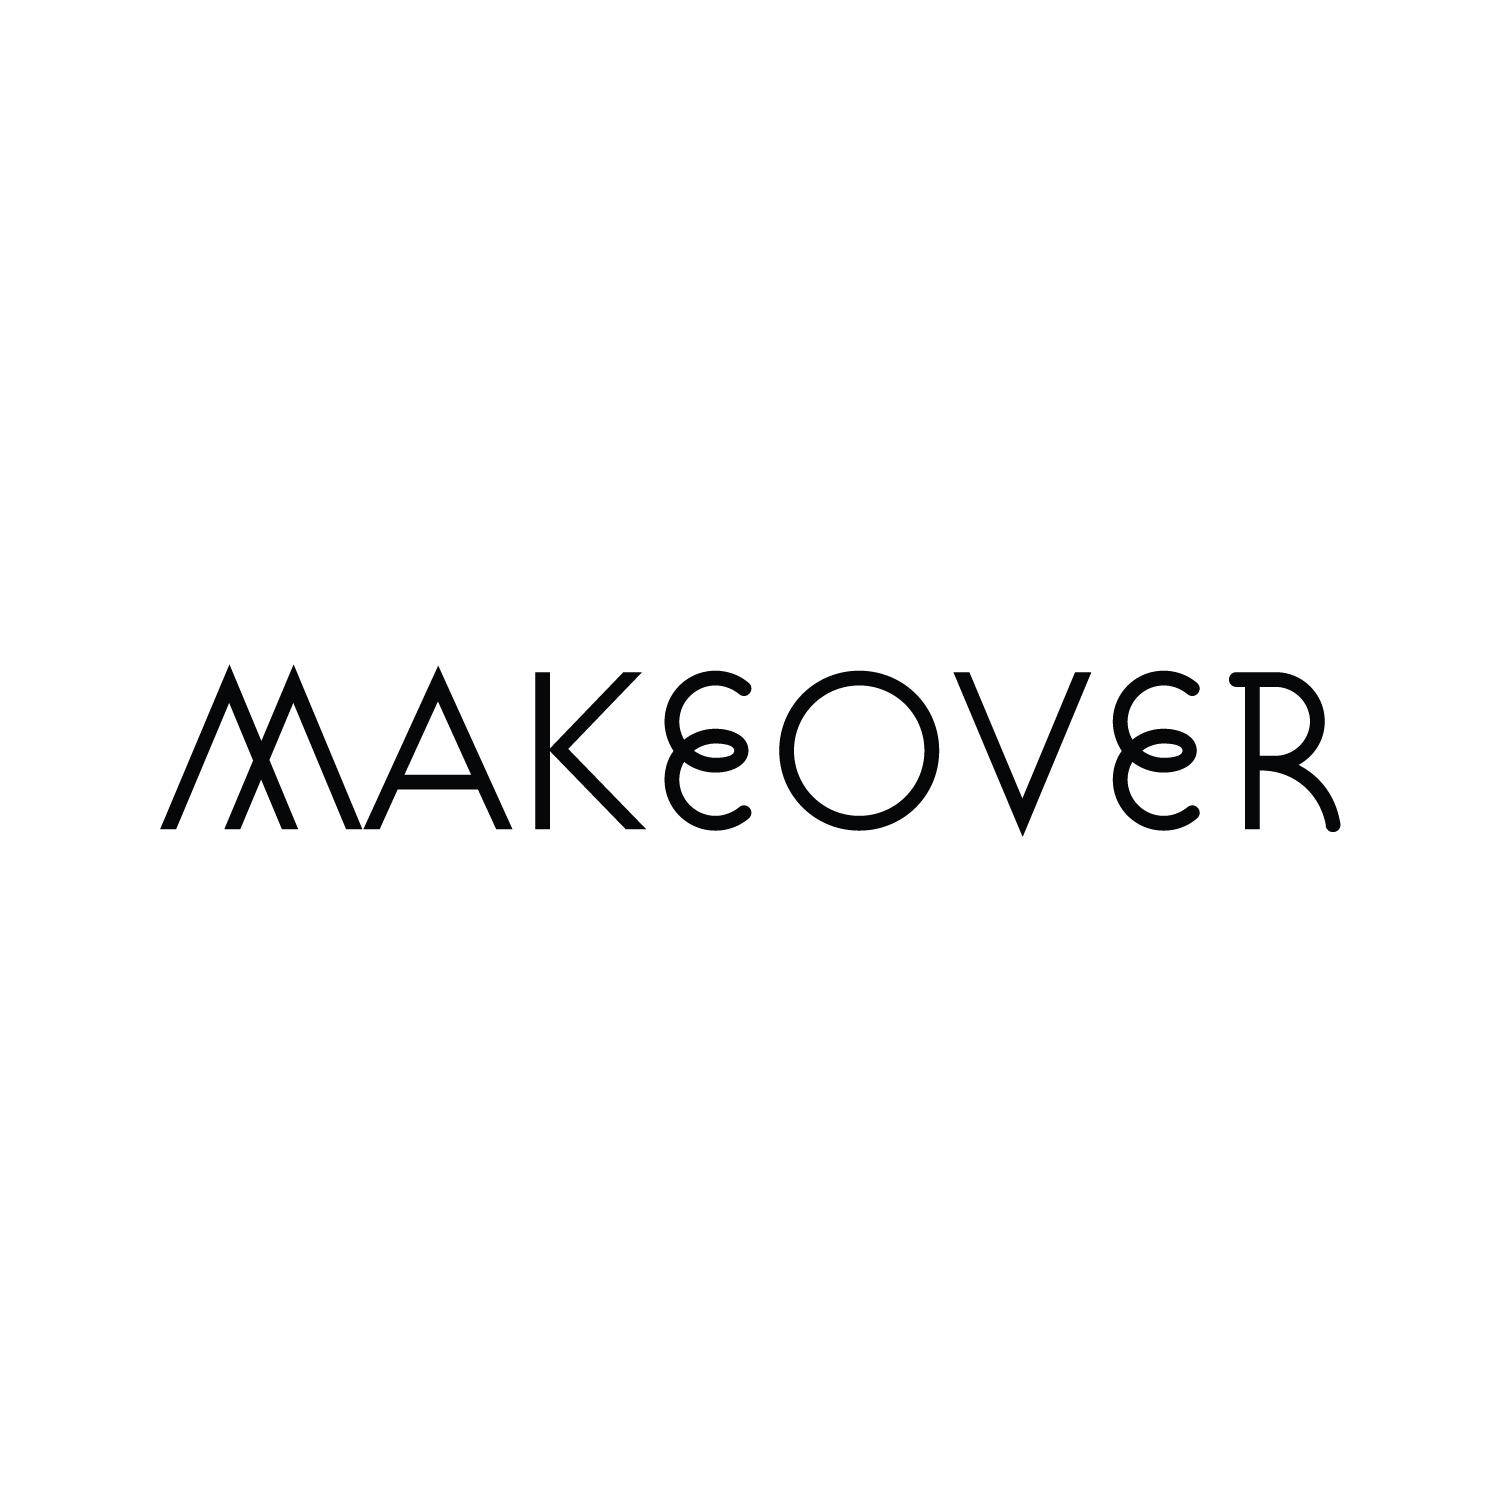 Makeover-bw